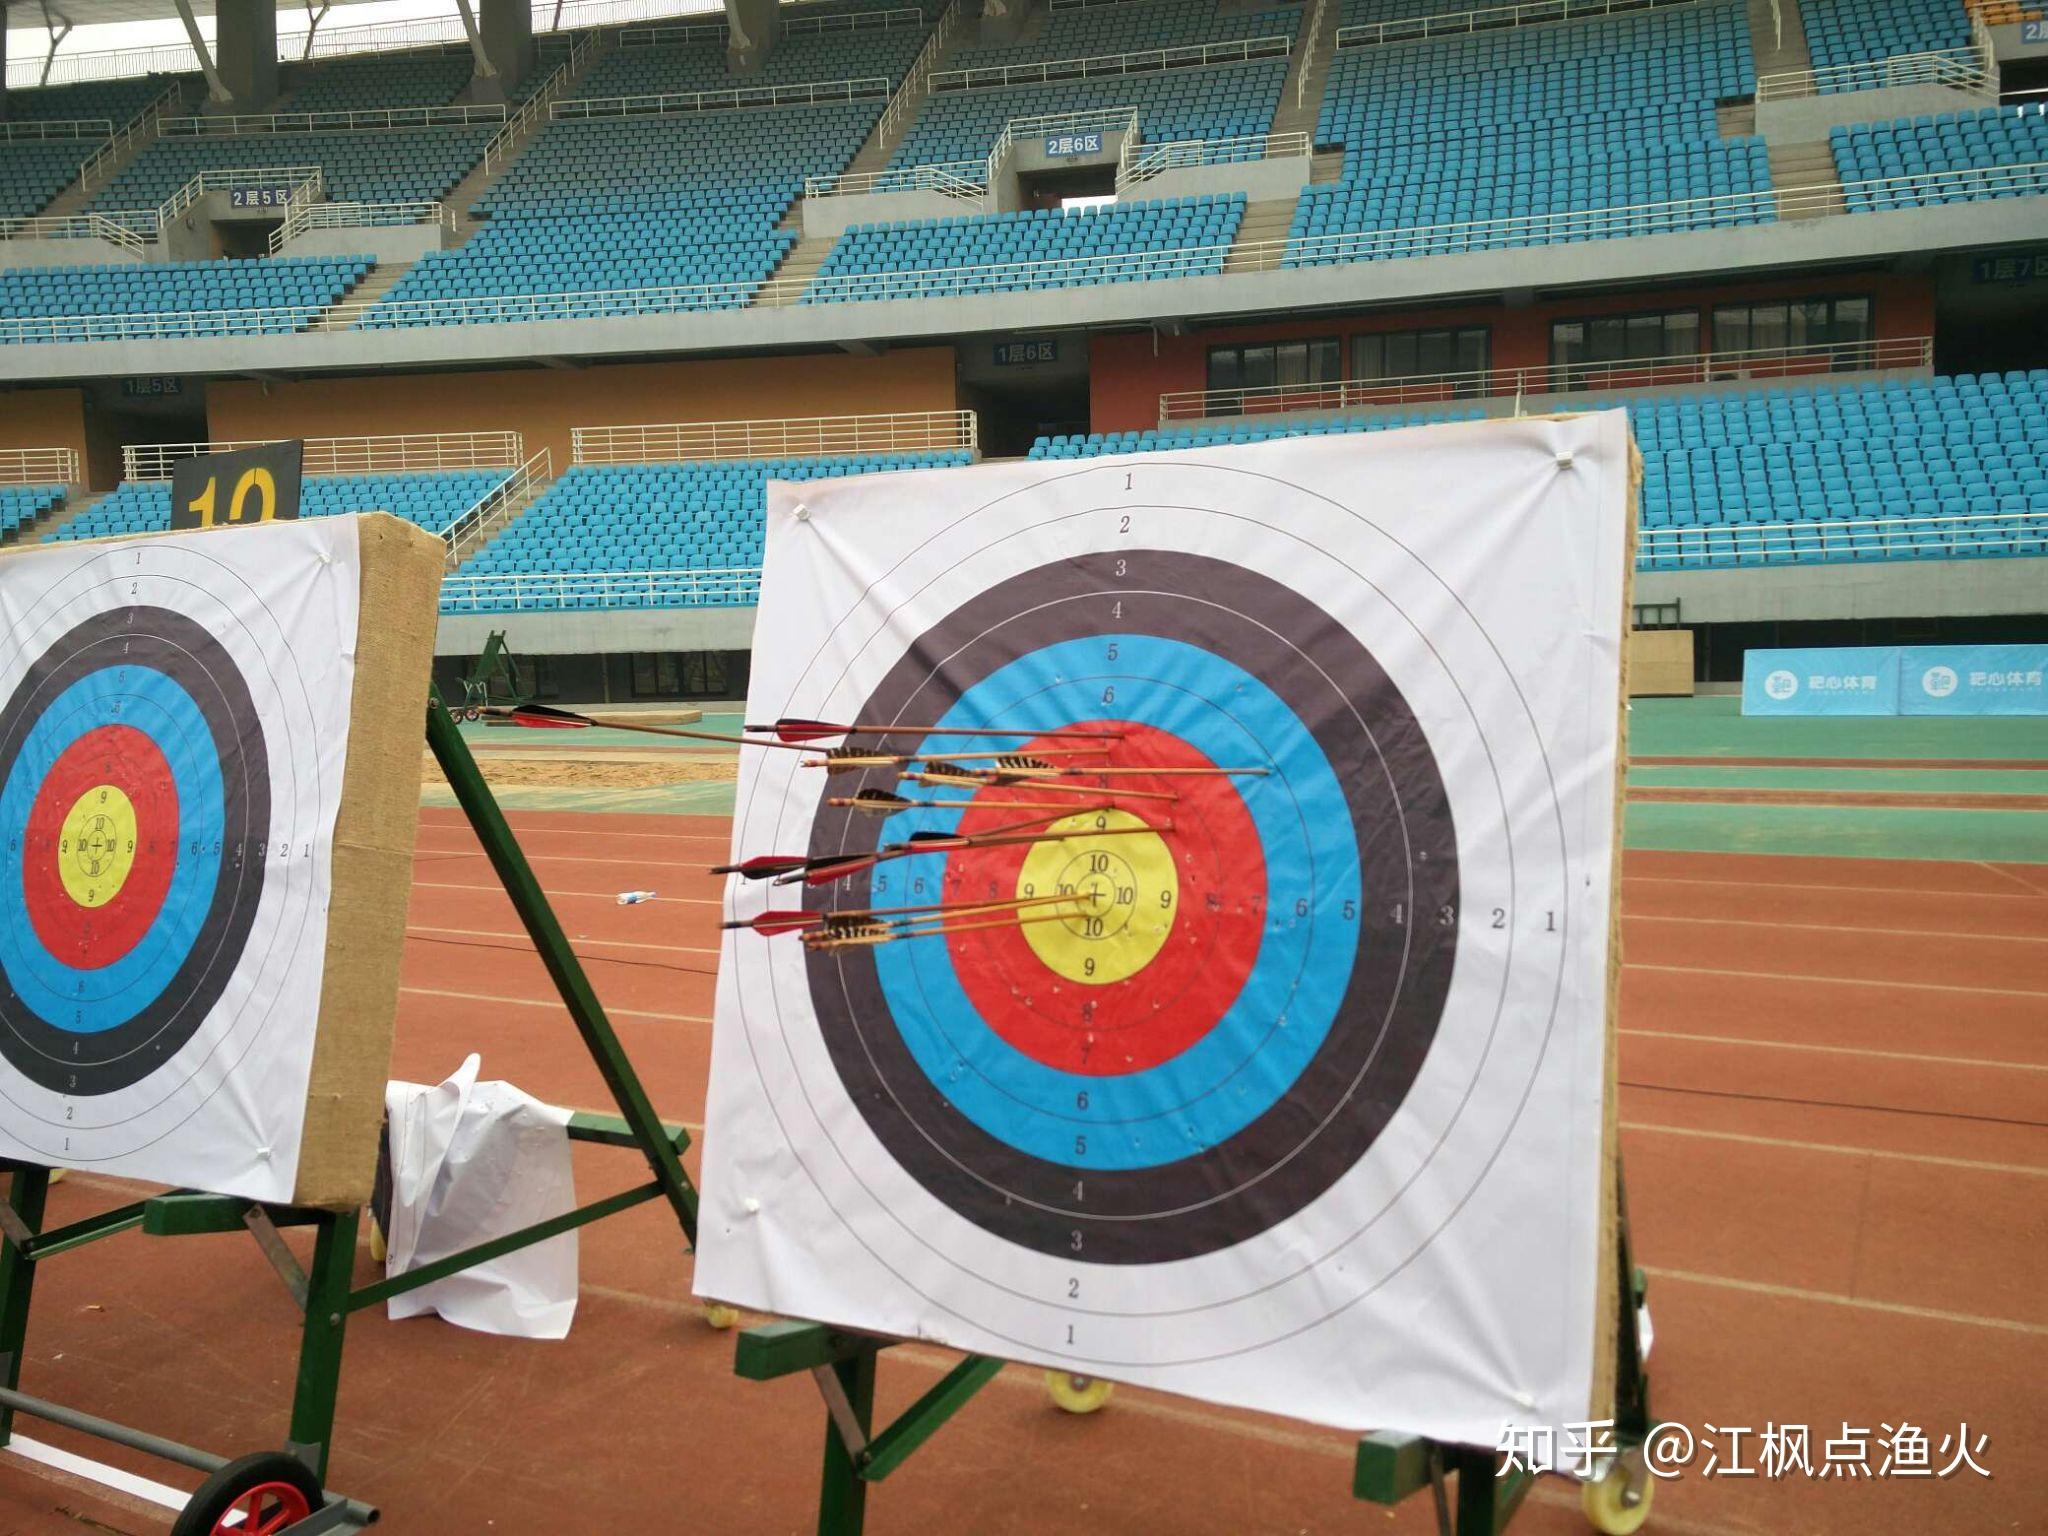 蓝色目标弓箭射出的箭 库存例证. 插画 包括有 对象, 运气, 投反对票, 掷镖的圆靶, 圆形, 争取 - 194940788